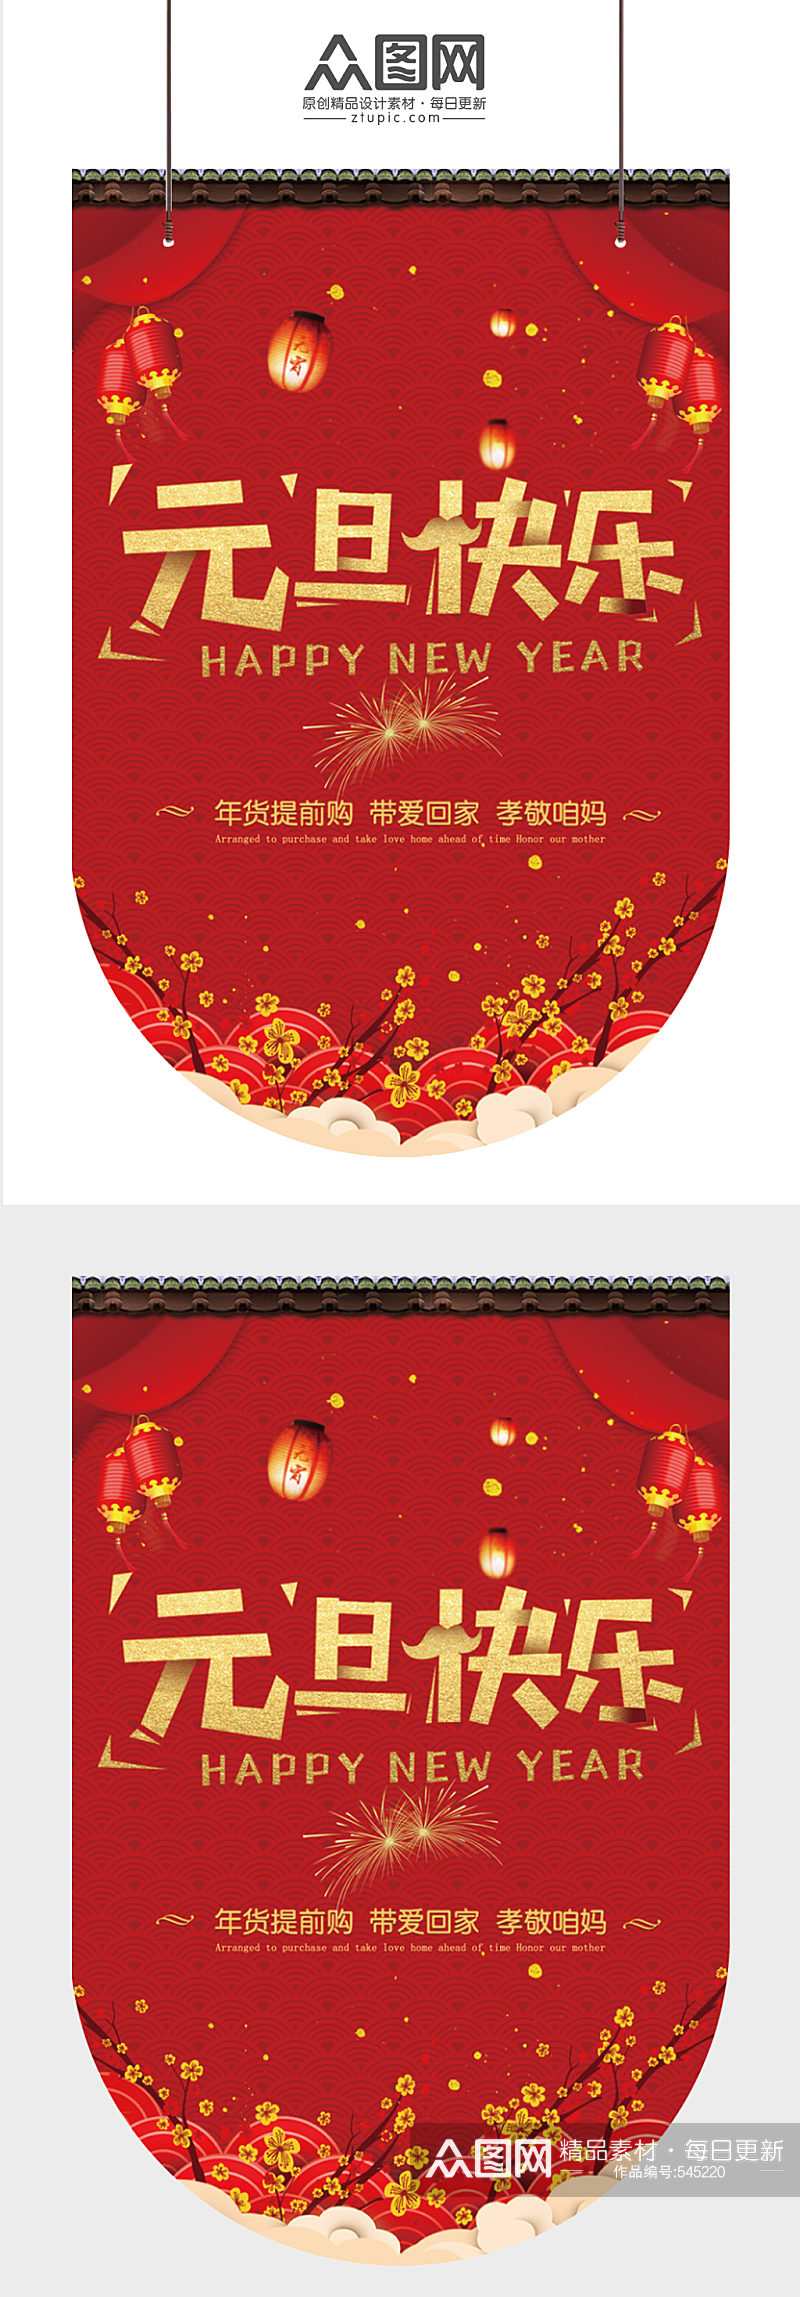 红色春节元旦快乐新年吊旗素材